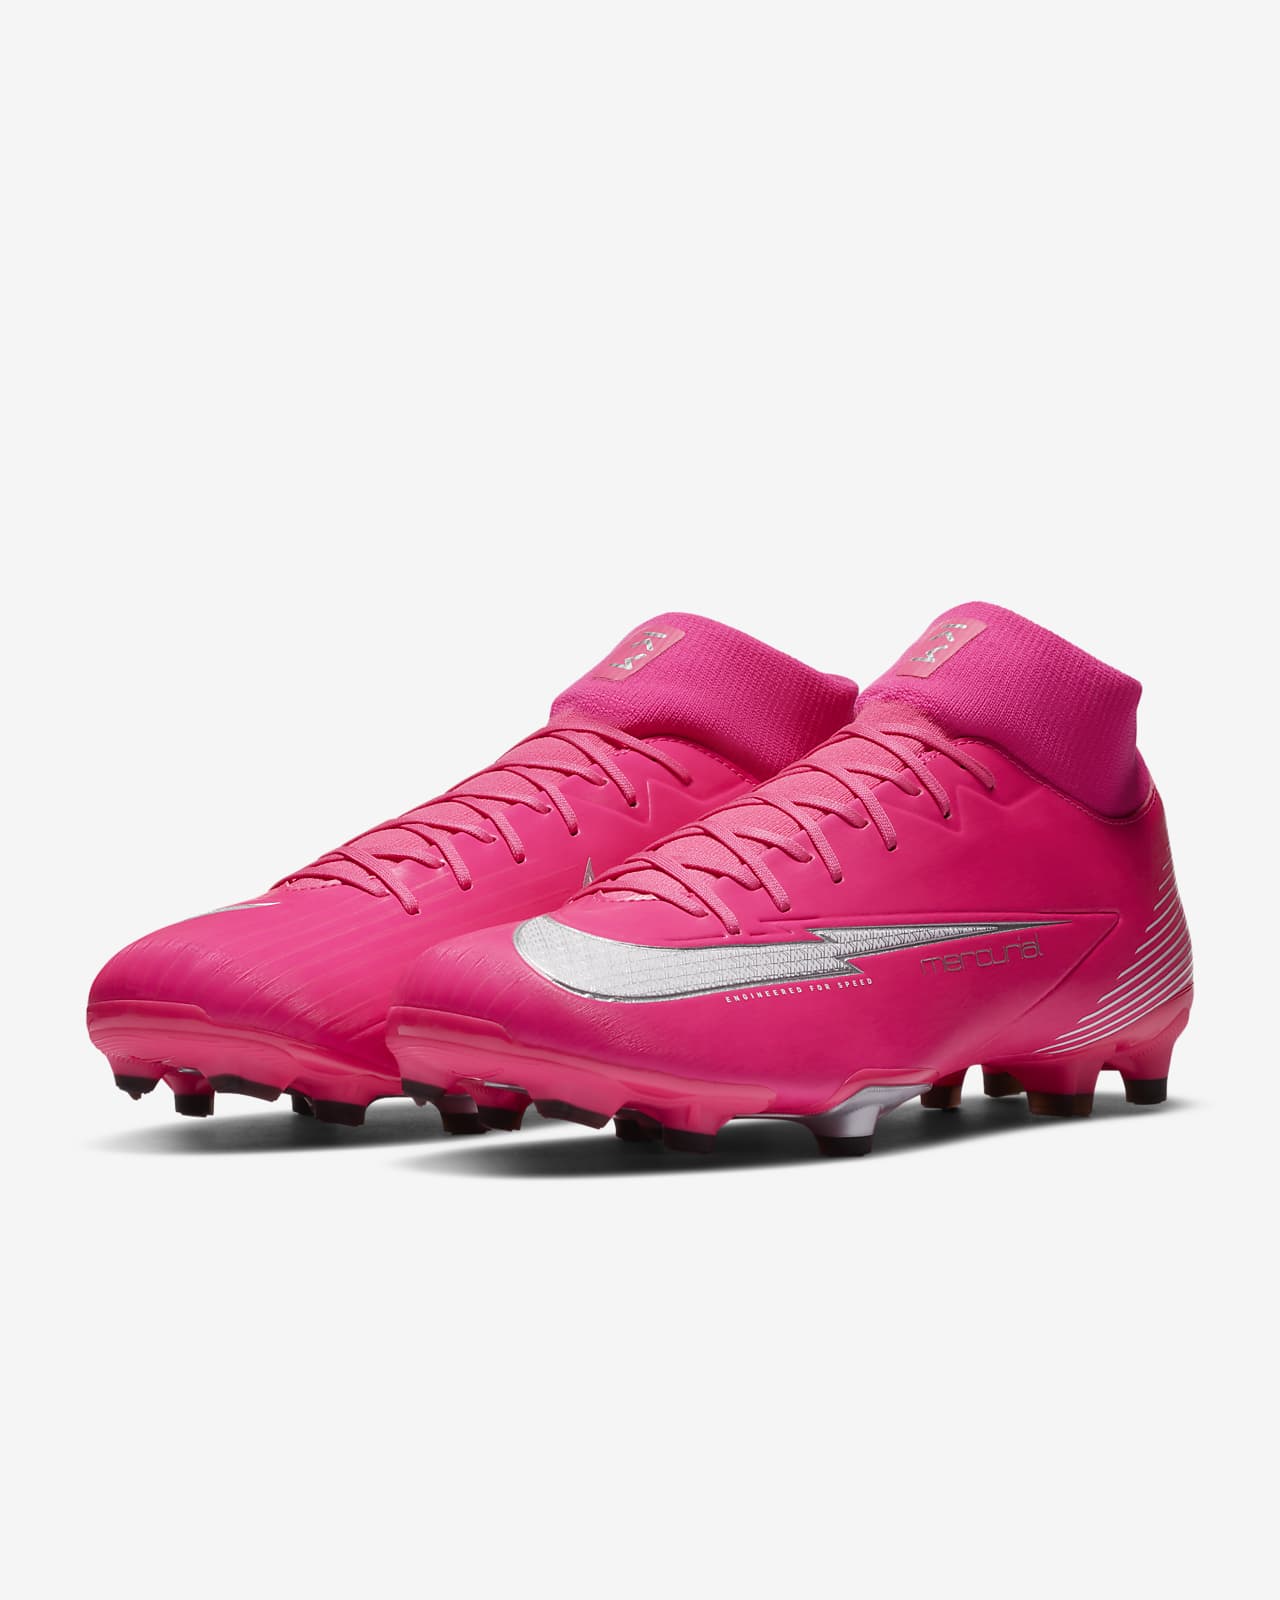 mbappe rosa boots